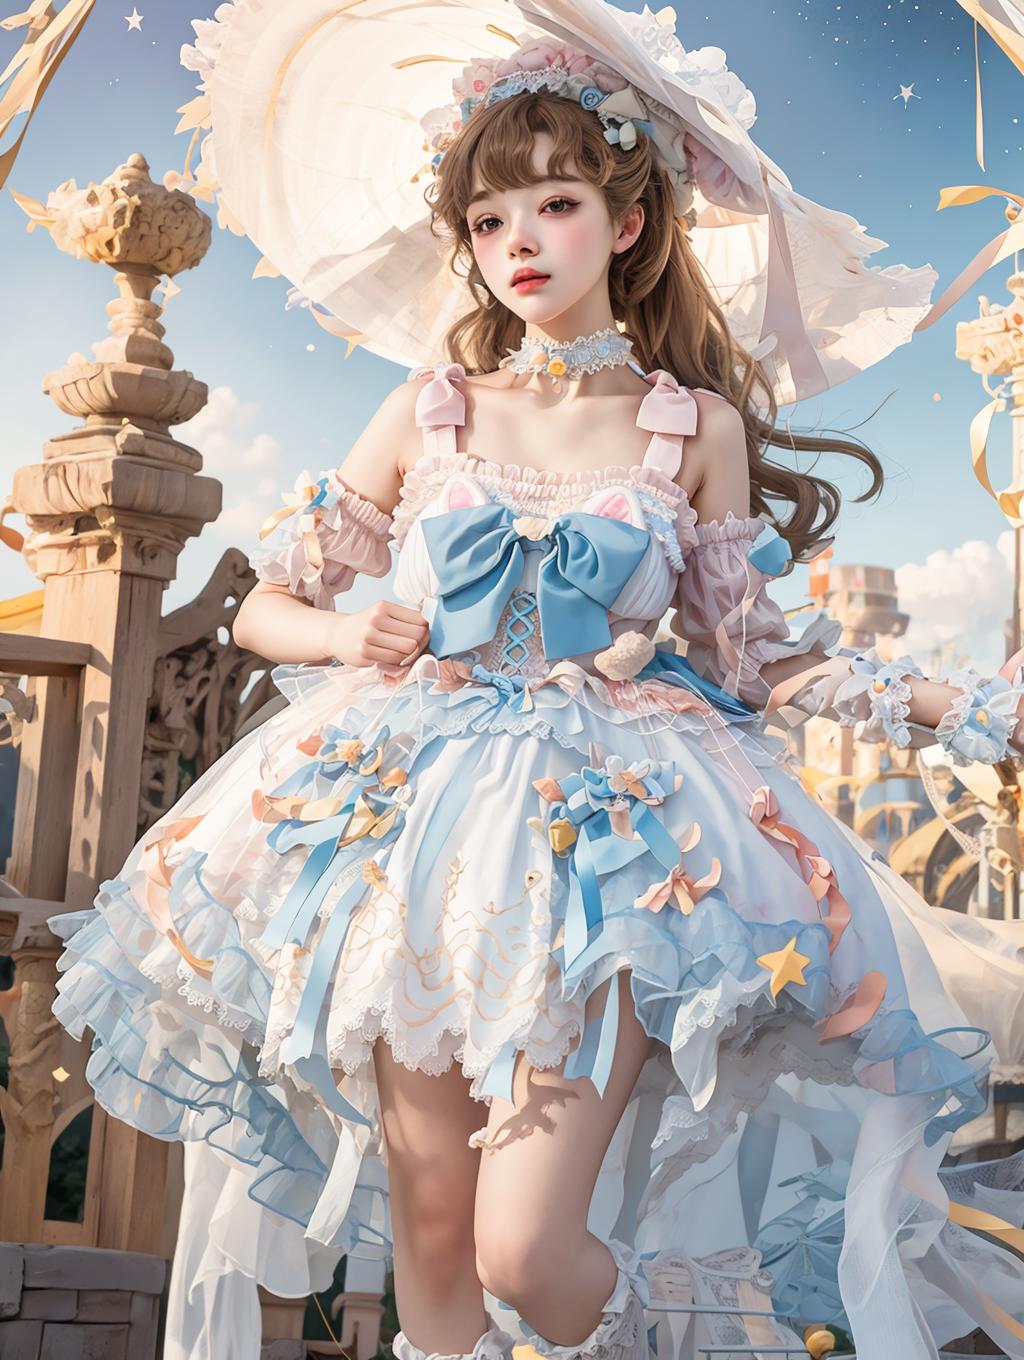 Sweet style dress | 甜美风裙子 image by chihayatan